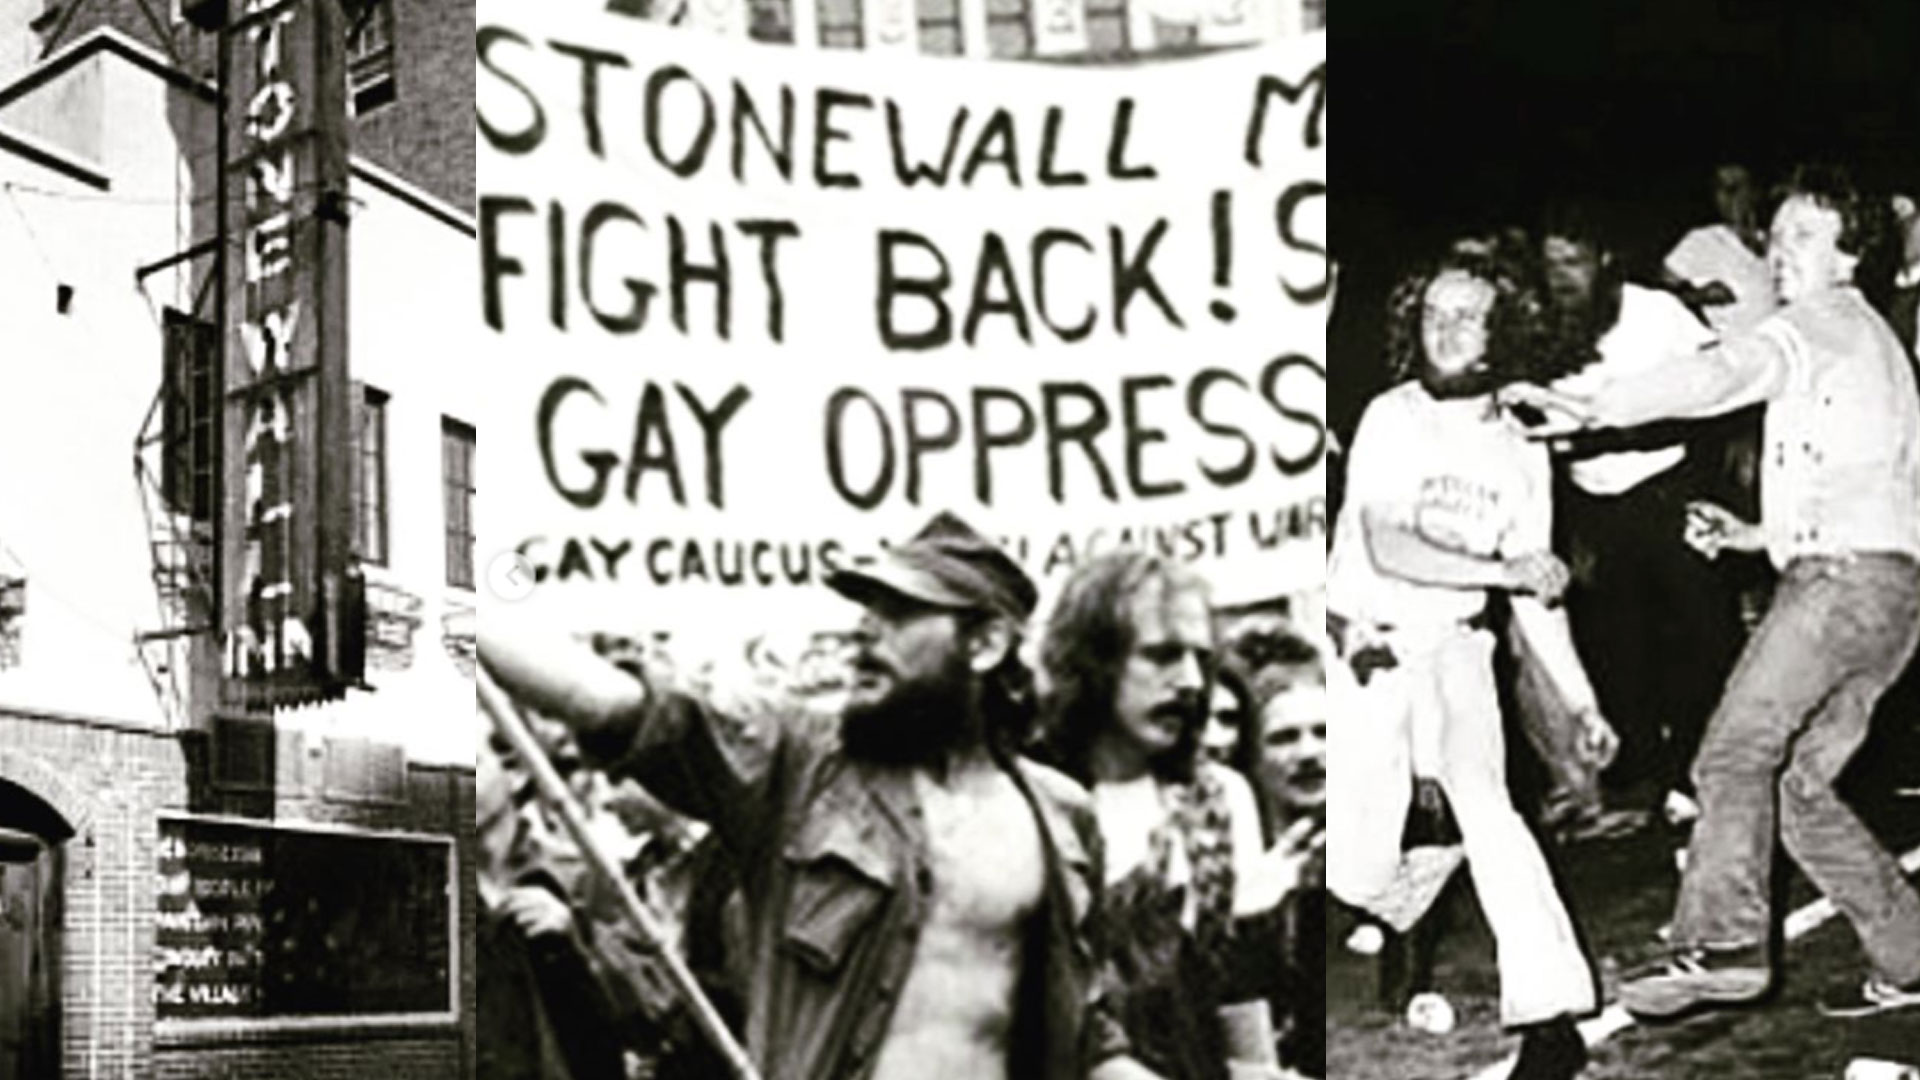 Los disturbios en Stonewall motivaron a la organización y lucha por los derechos LGBT (Foto: instagram stonewall inn)